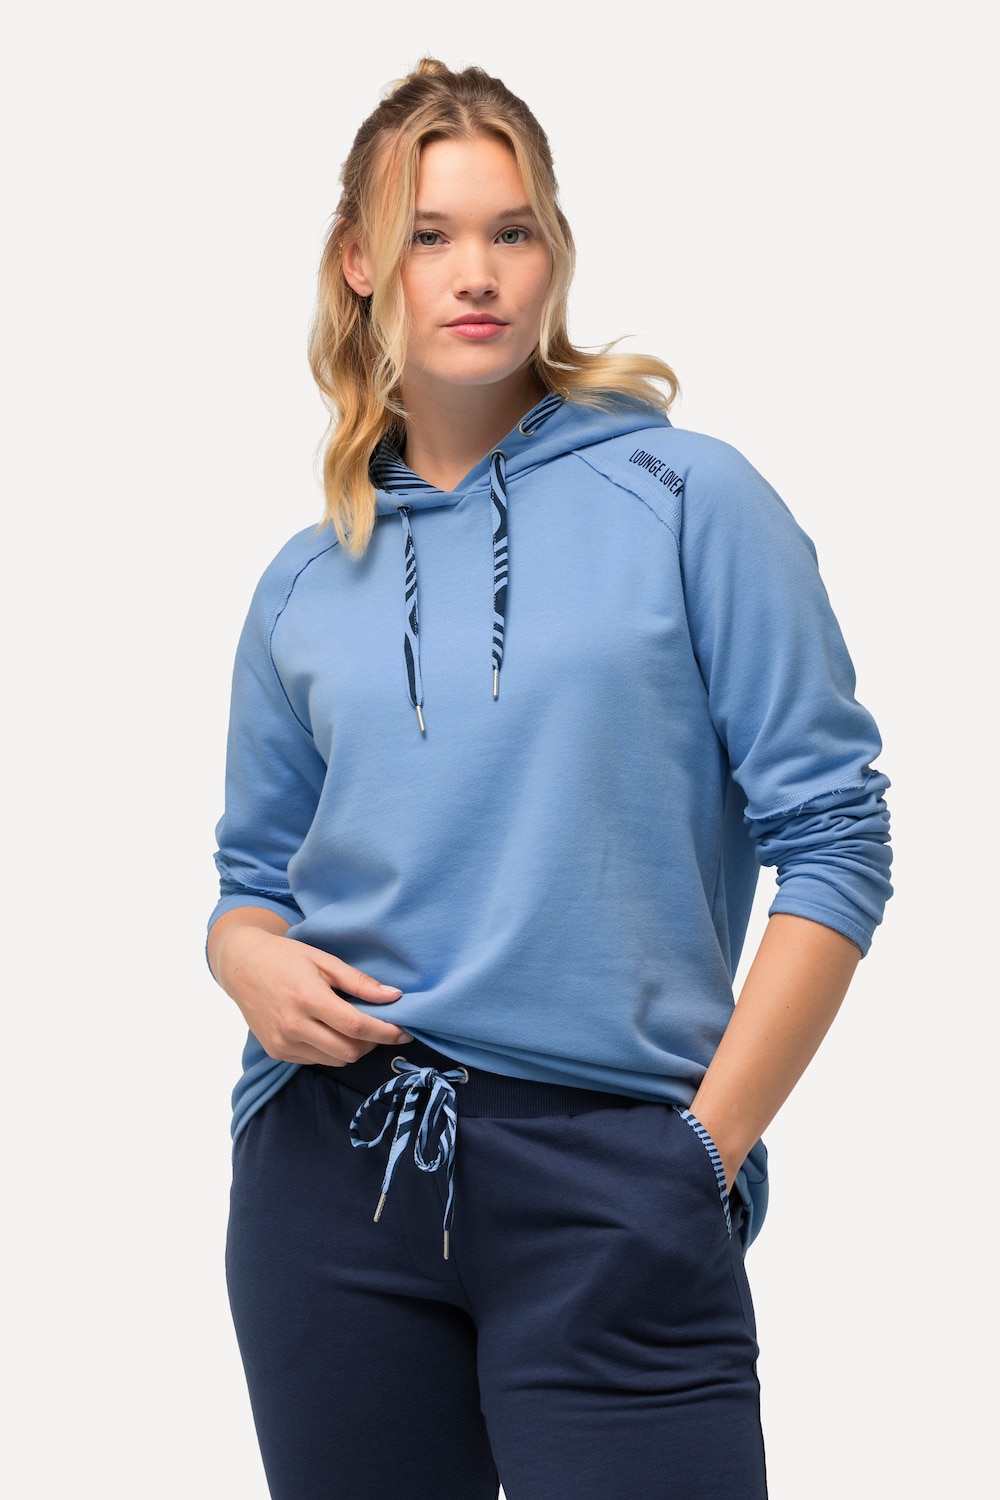 Grote Maten Loungewear-hoodie, Dames, blauw, Maat: 58/60, Katoen/Polyester, Ulla Popken